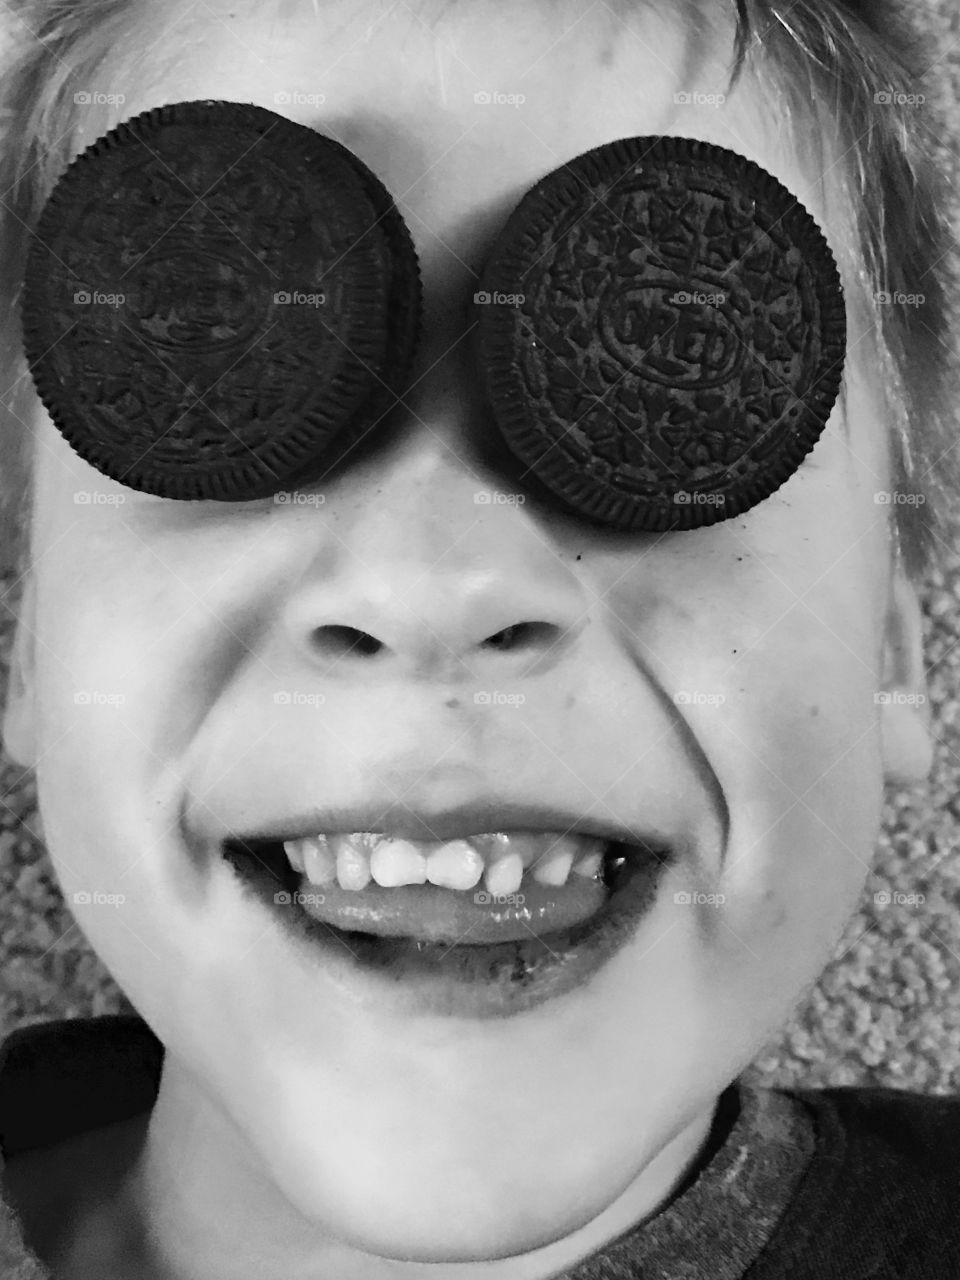 My Cookie Monster. Cookies for eyes. 